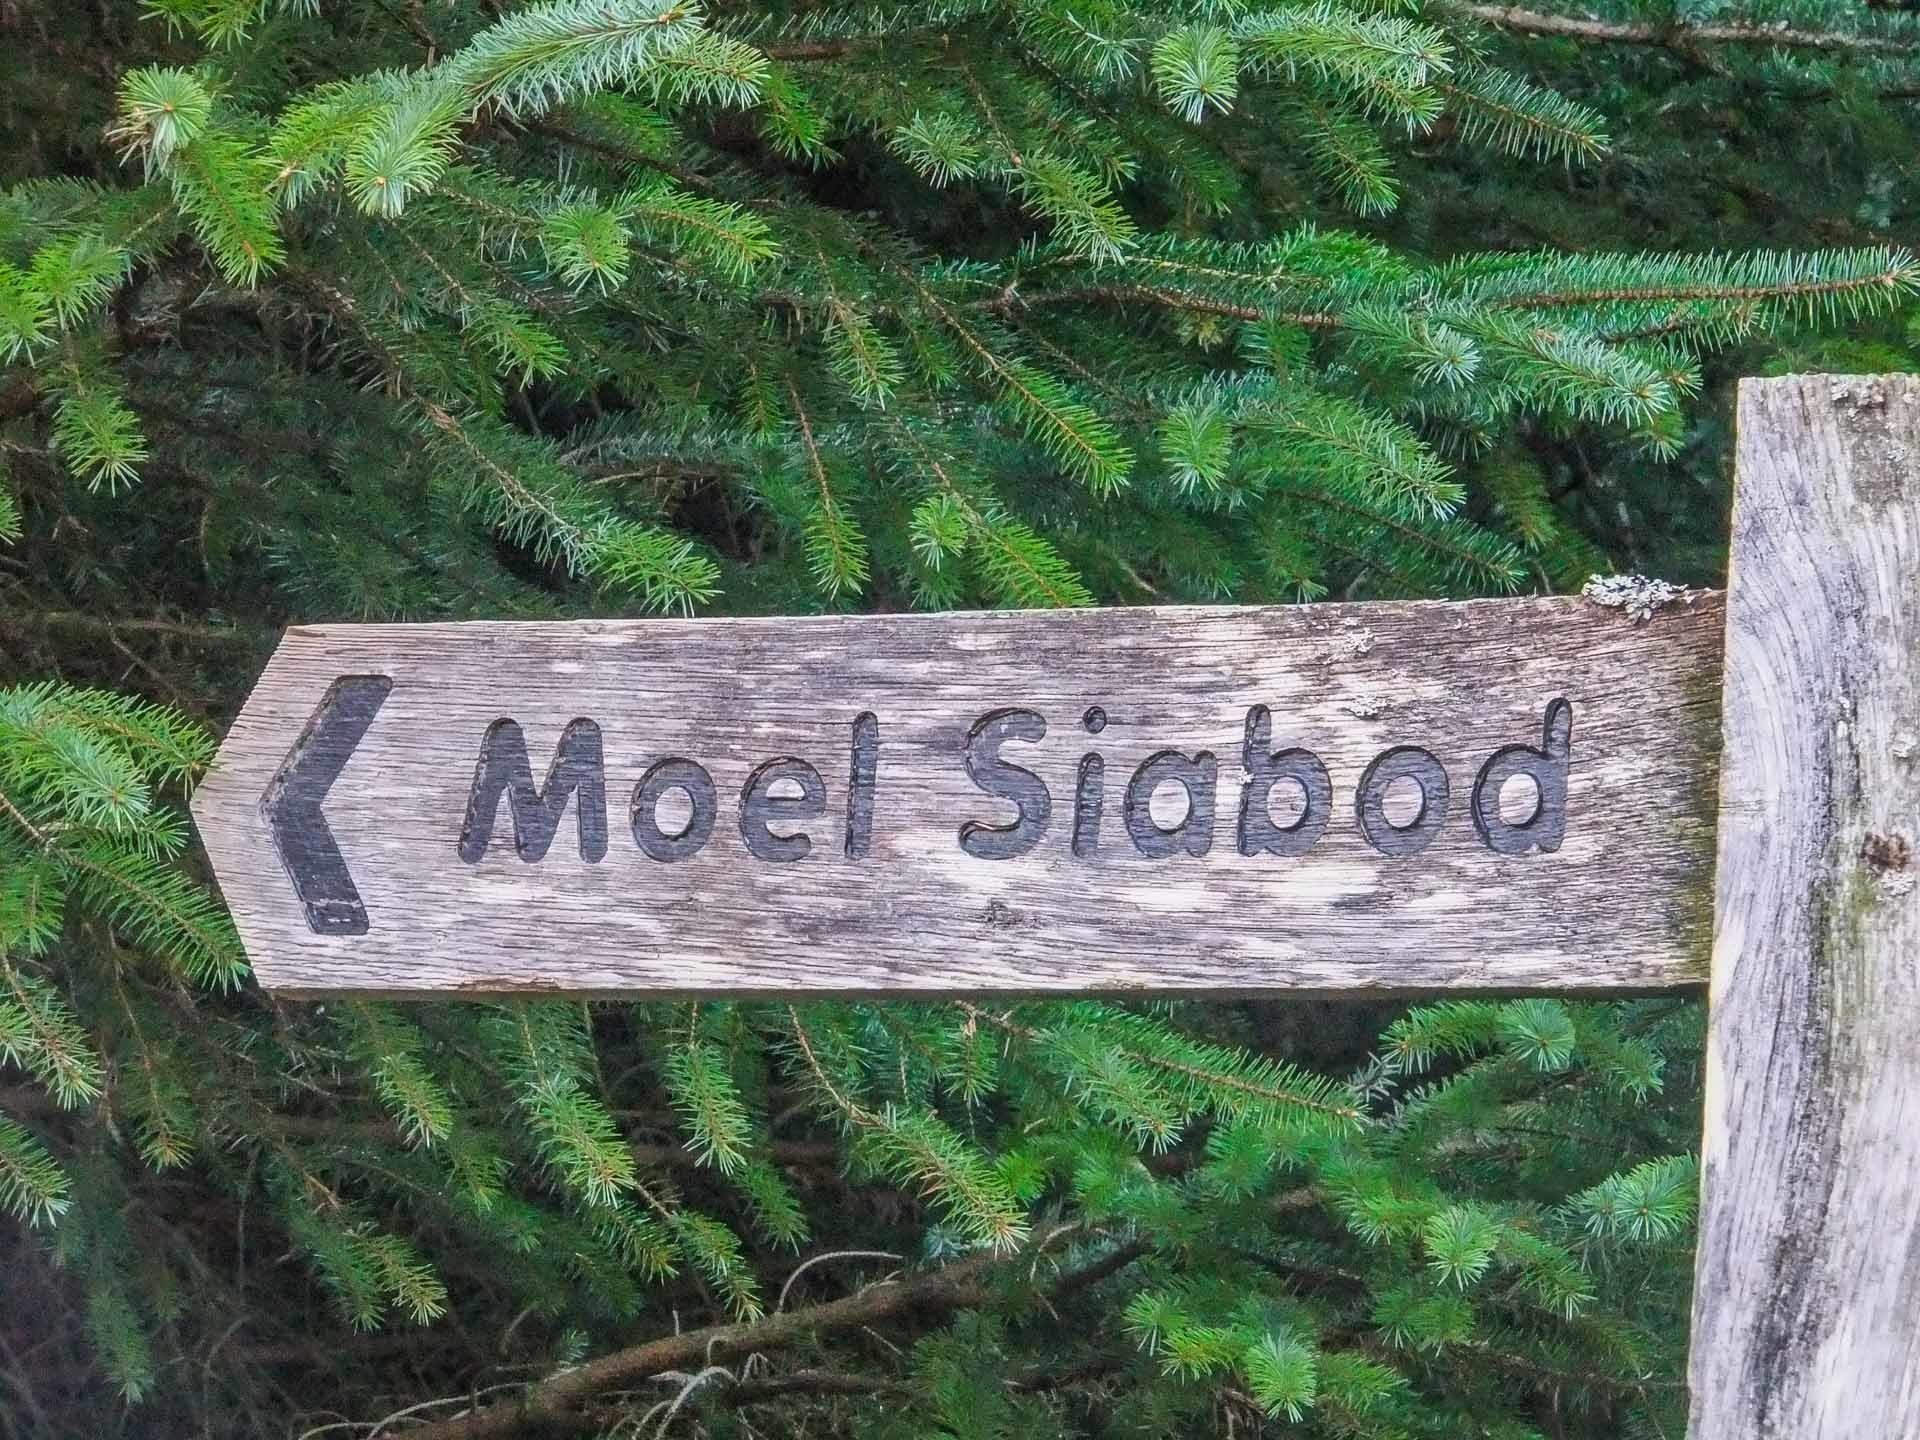 Moel Siabod